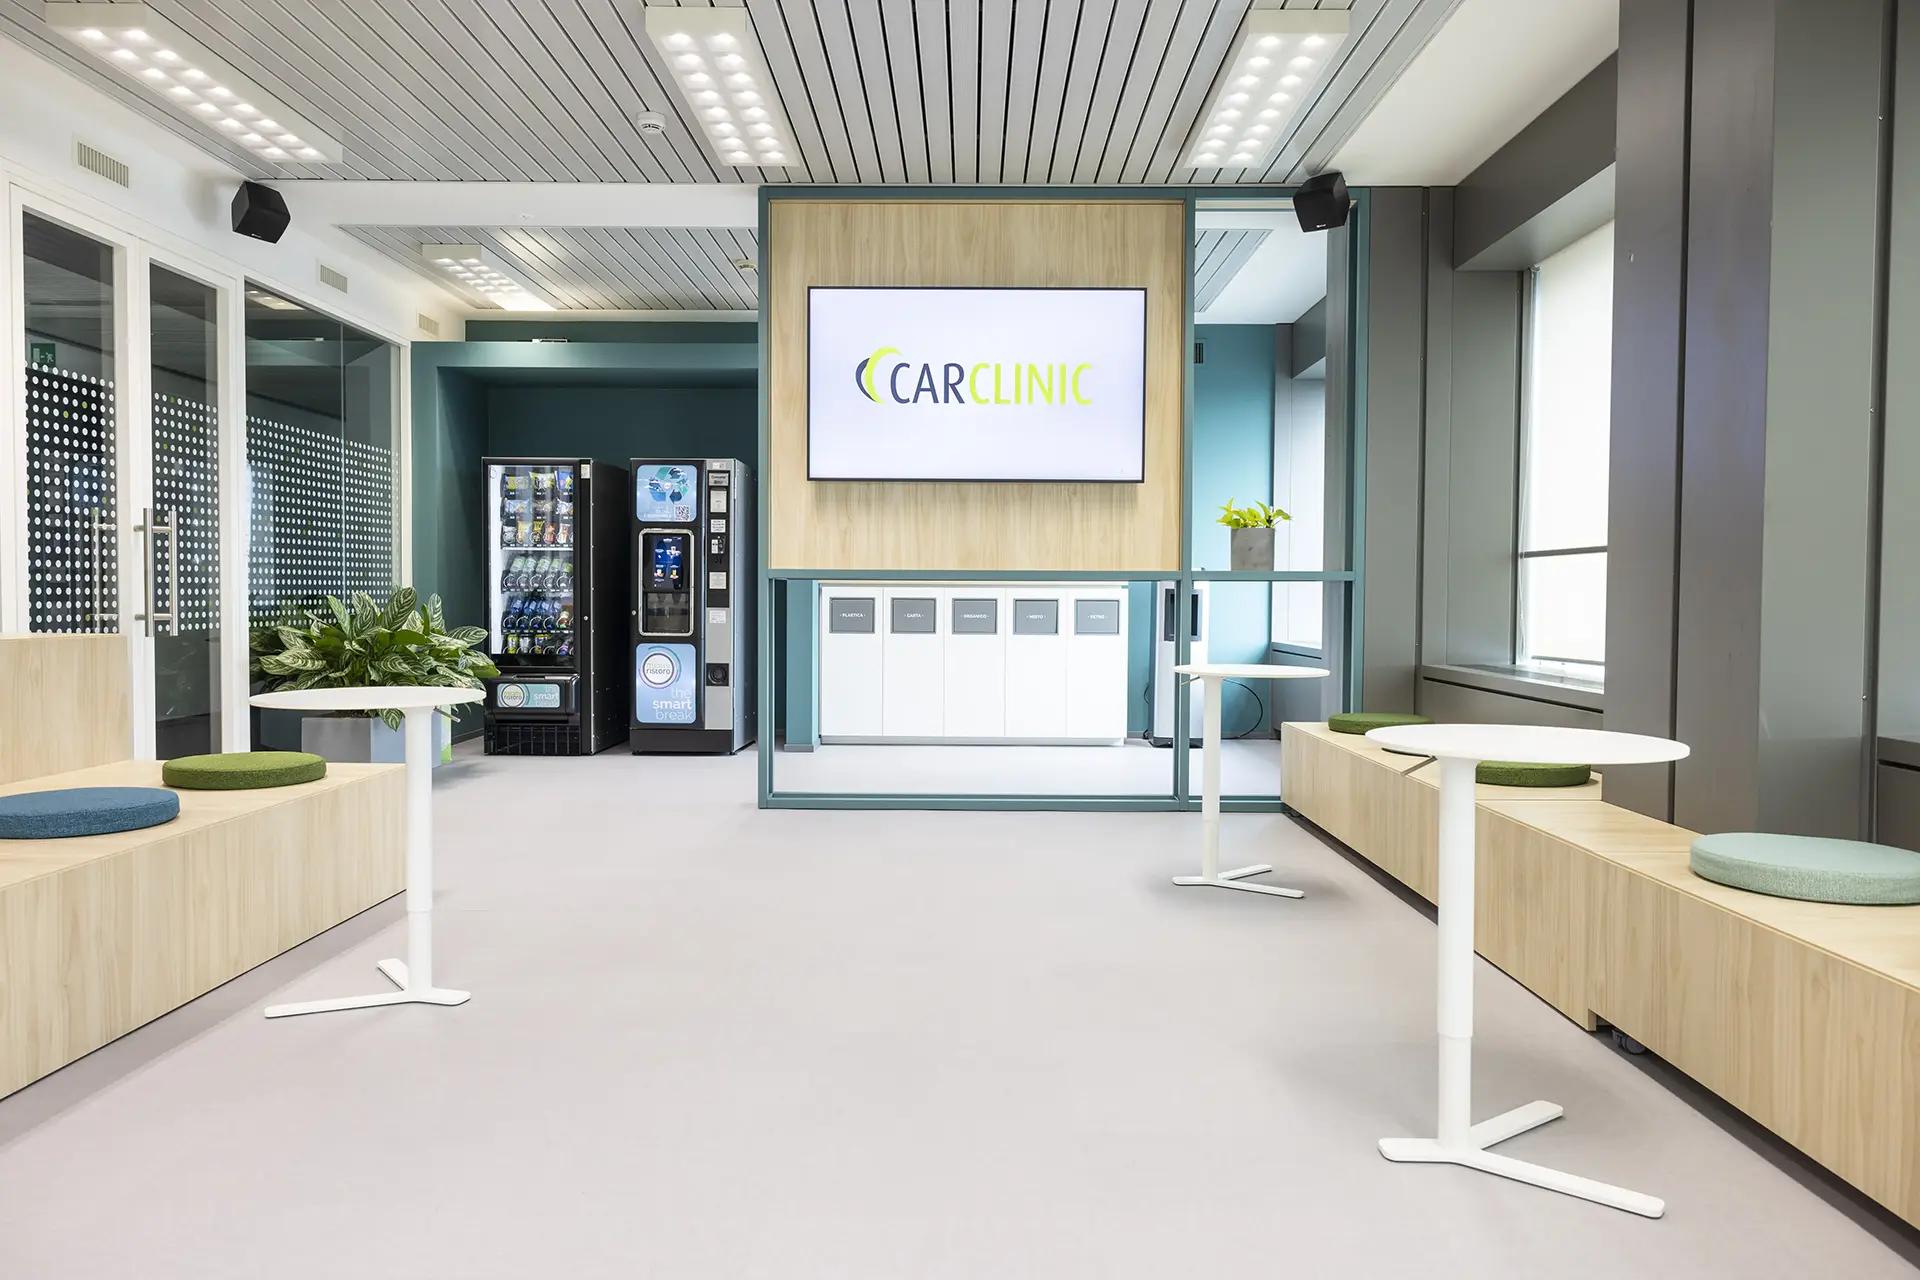 Uffici Car Clinic, area ristoro con distributori automatici 